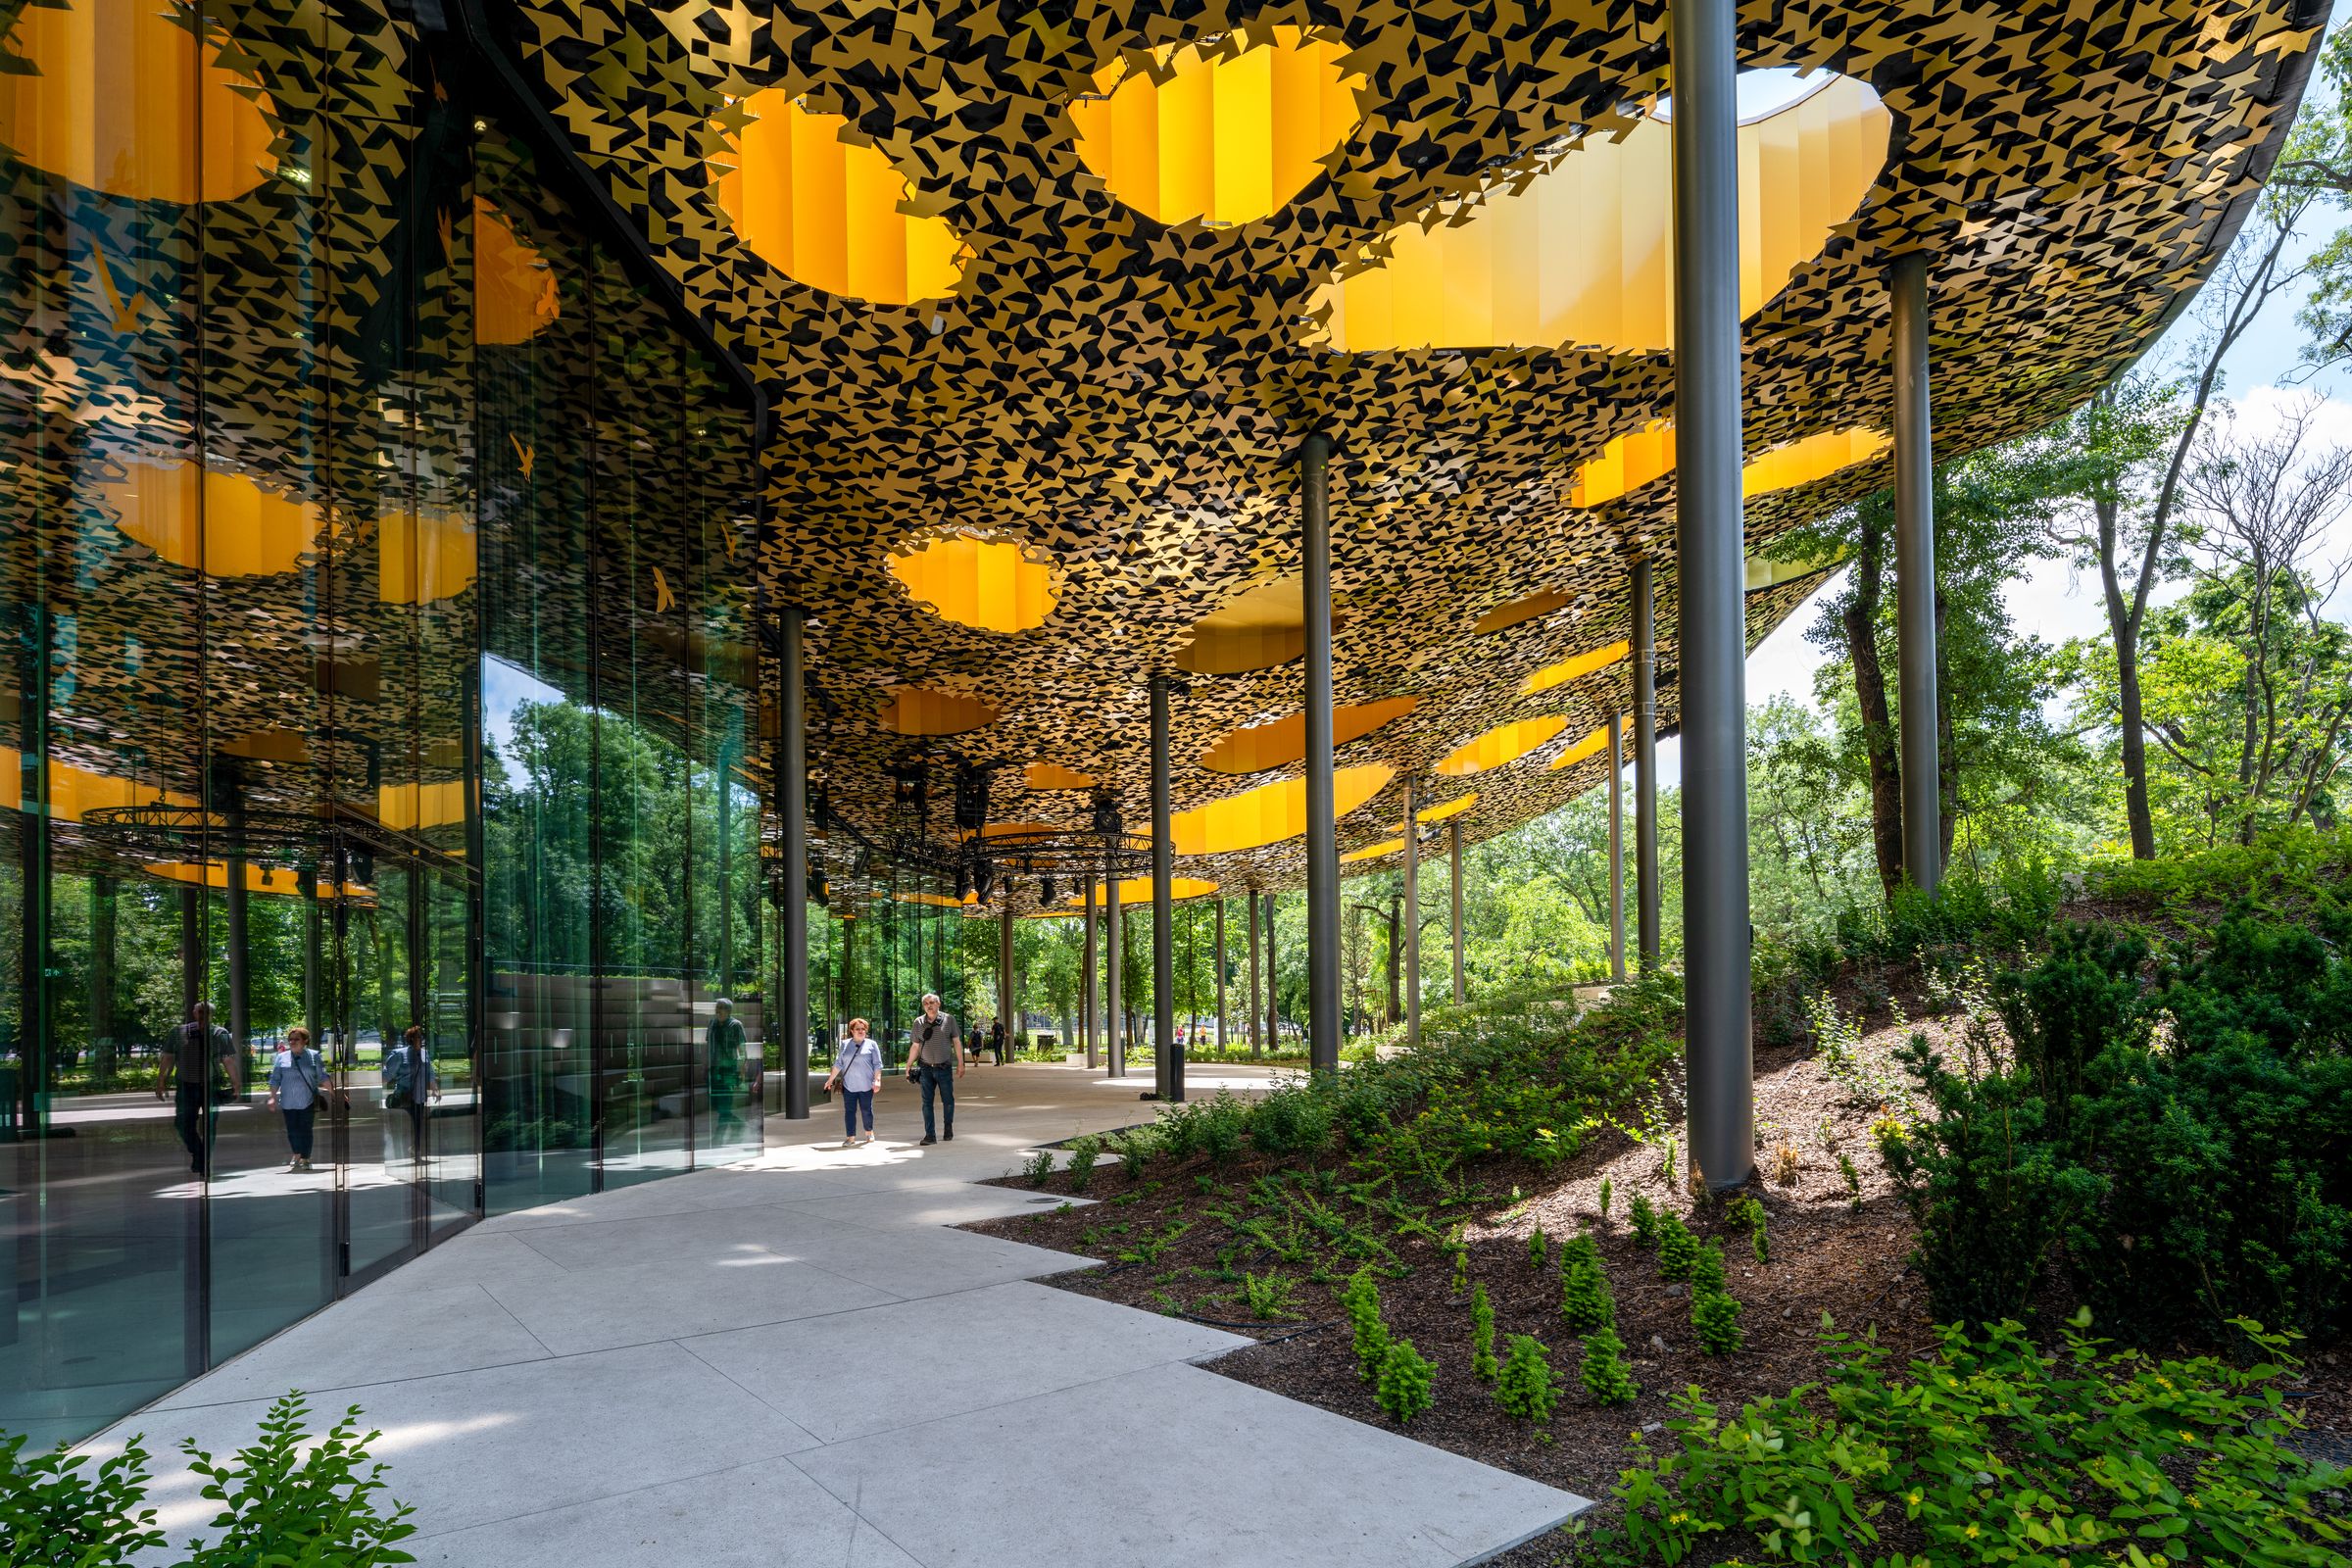 鑲滿金色樹葉形裝飾的天花板和圓柱形支撐結構，讓音樂之家與周遭自然環境相互延續。(Liget Budapest © Palkó György)